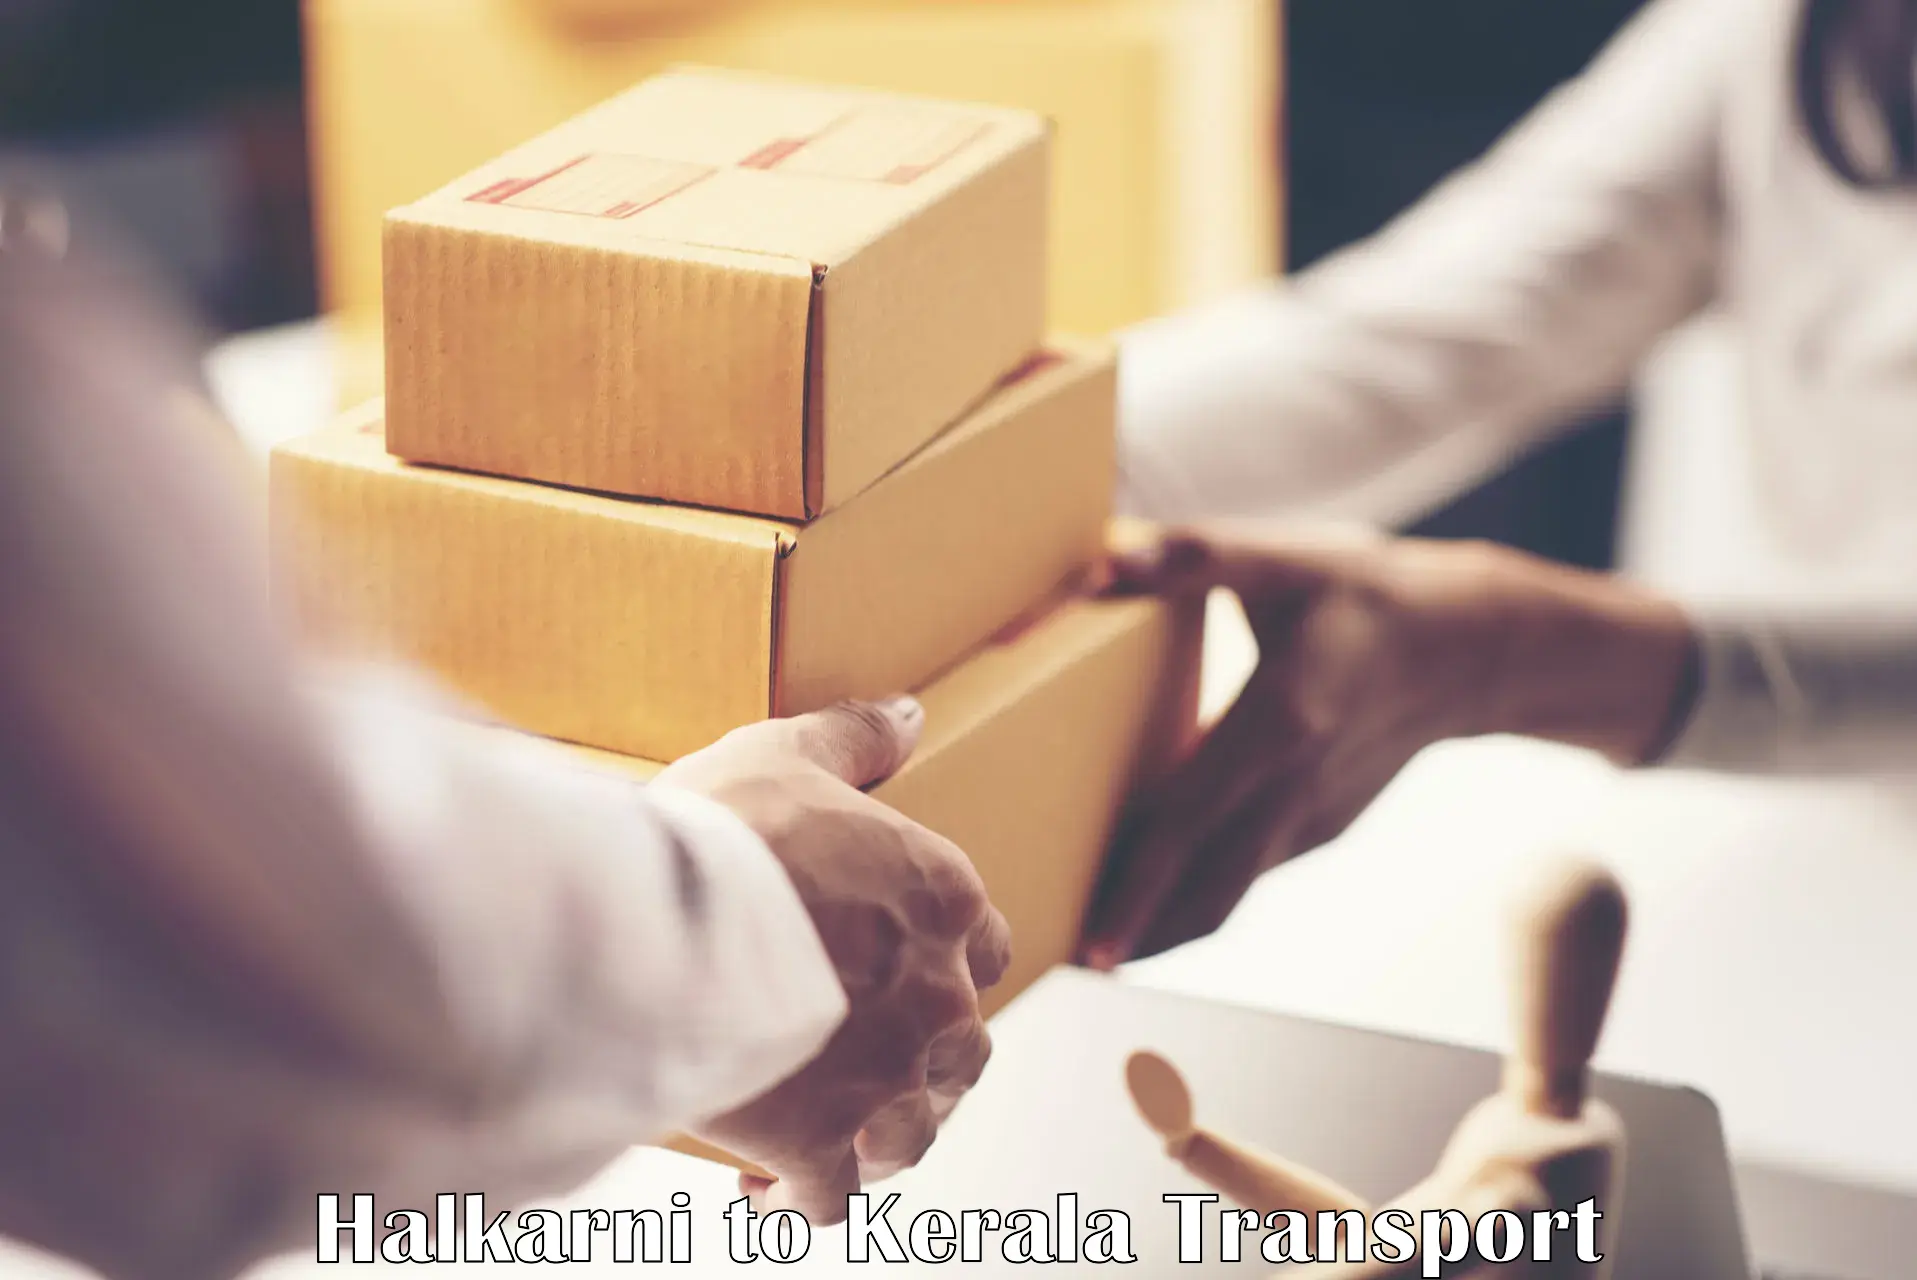 Scooty parcel Halkarni to Kerala